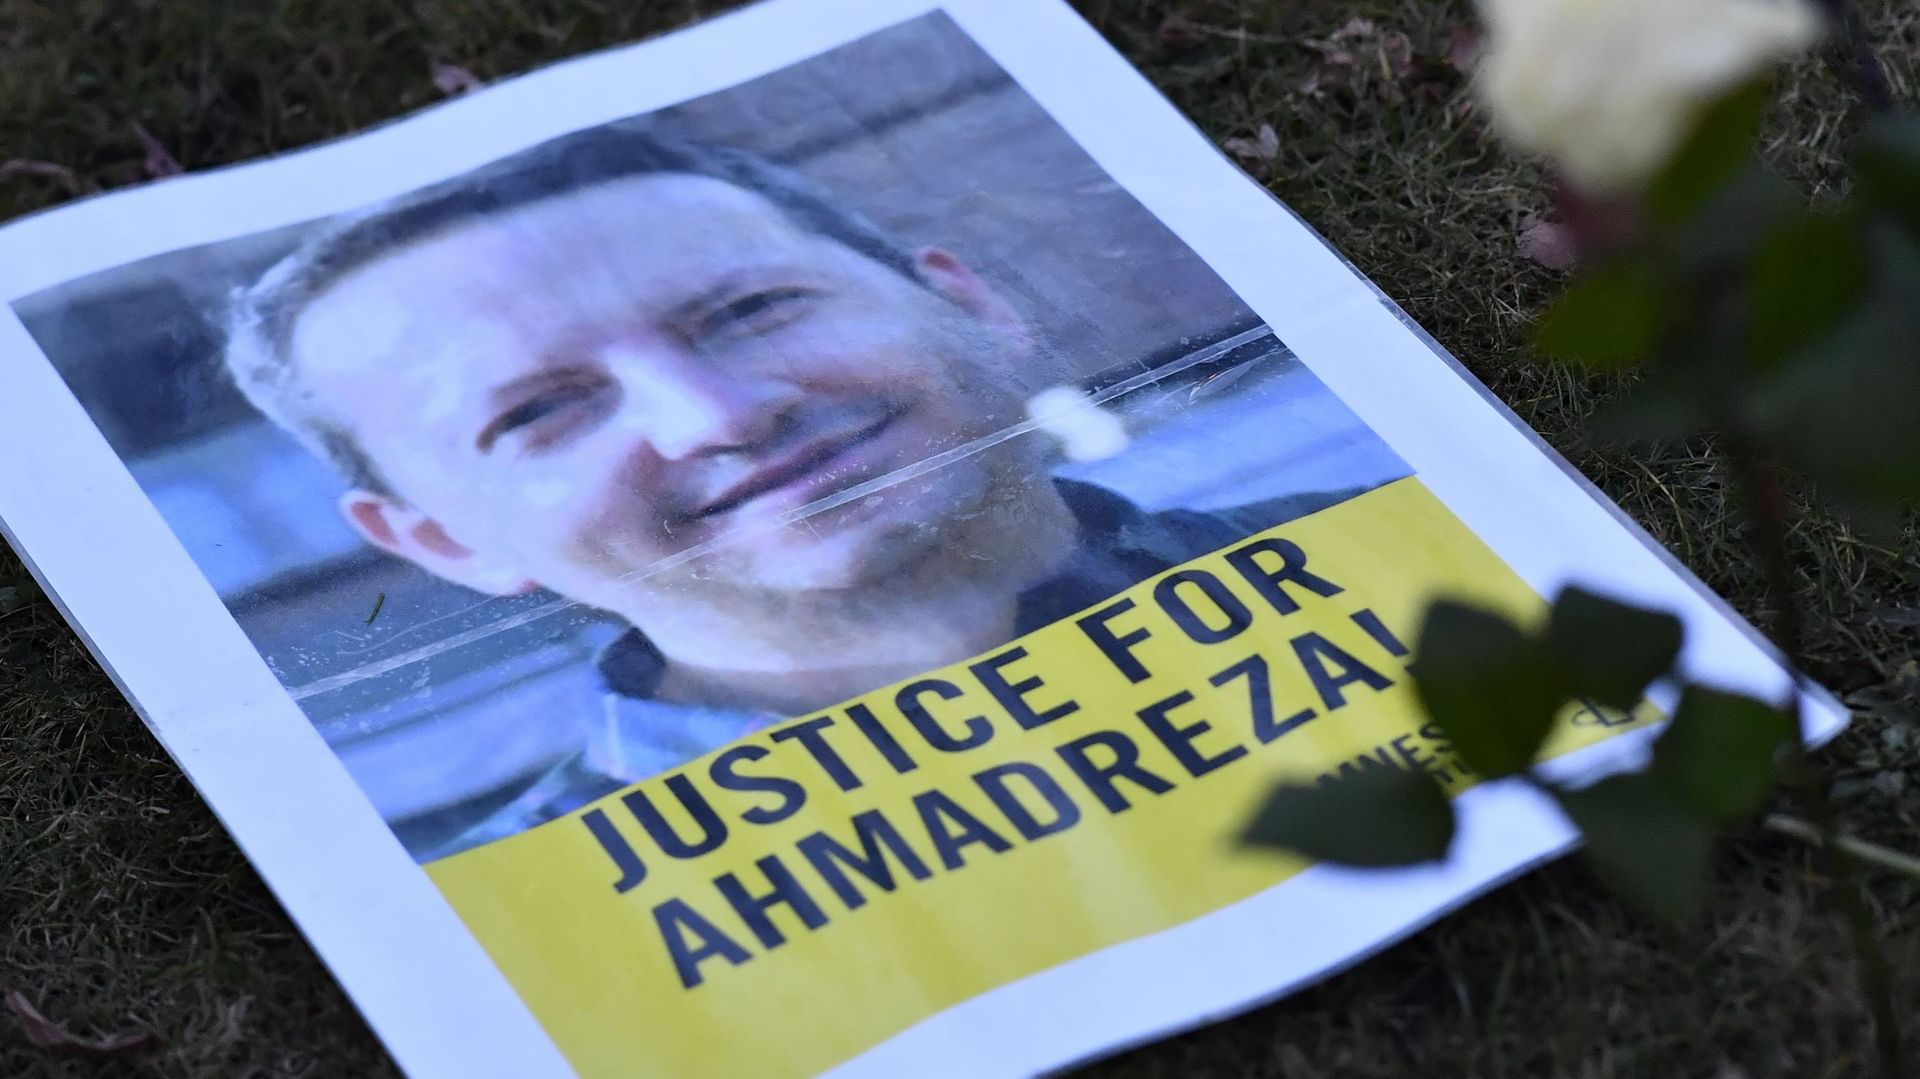 Ahmadreza Djalali, professeur de la VUB condamné à mort, placé en isolement, dernière étape avant une exécution